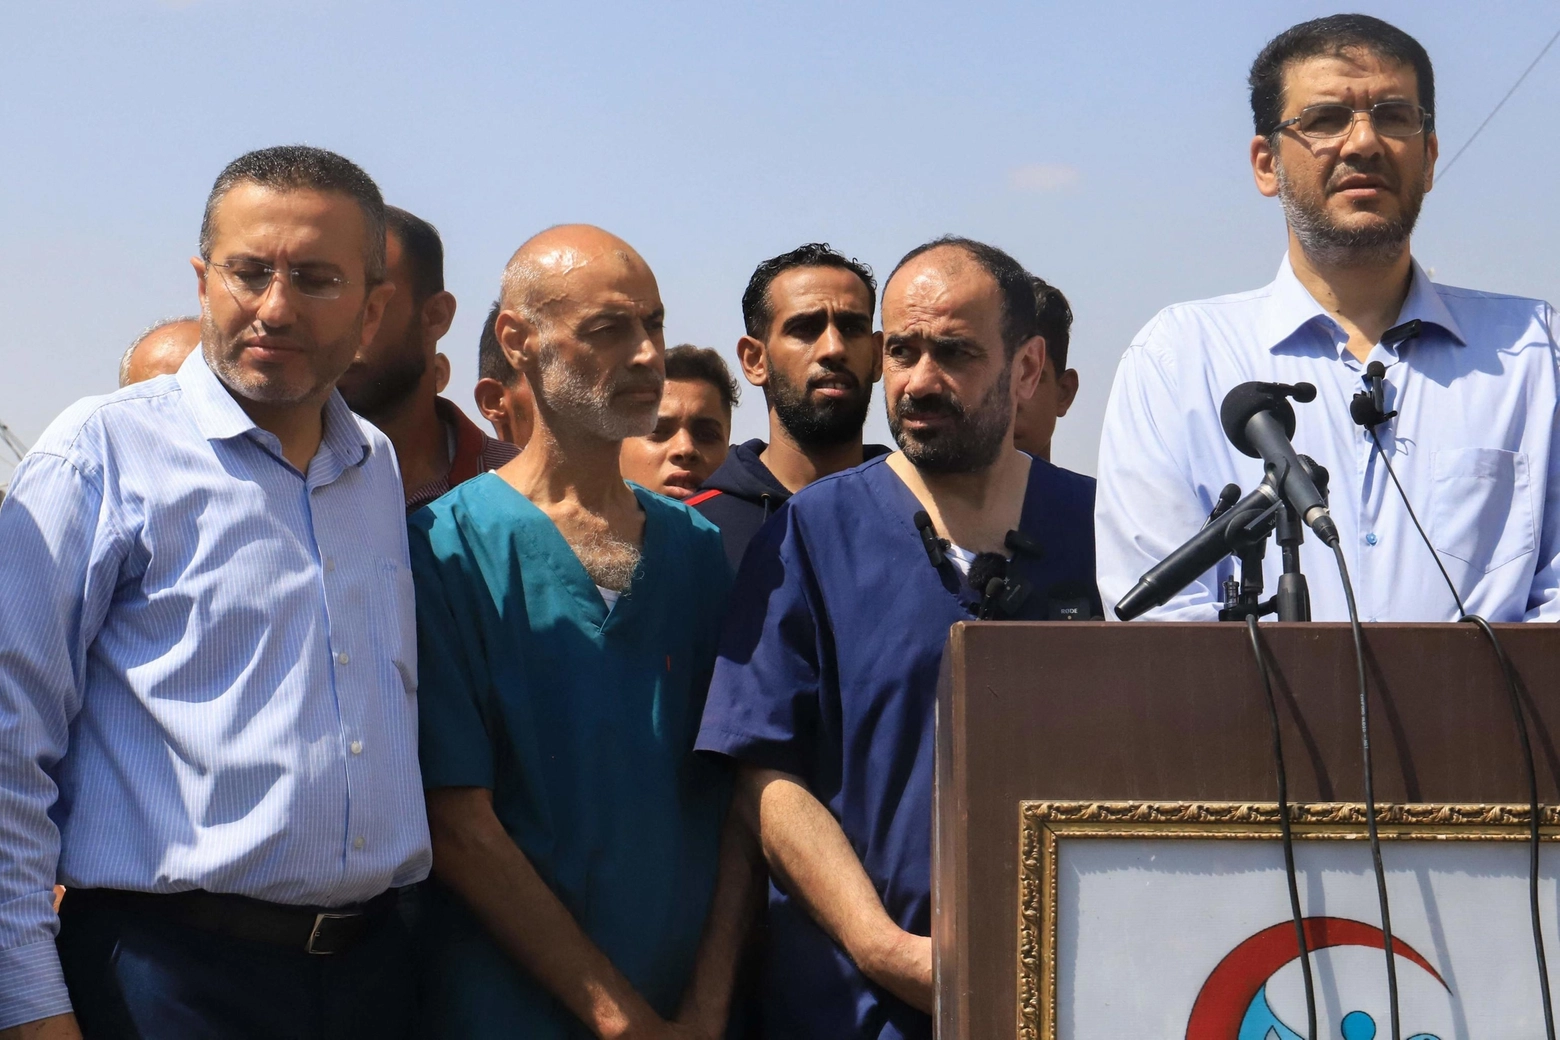 Il direttore dell'ospedale Al-Shifa, Mohammed Abu Salmiya, parla di torture durante la sua detenzione